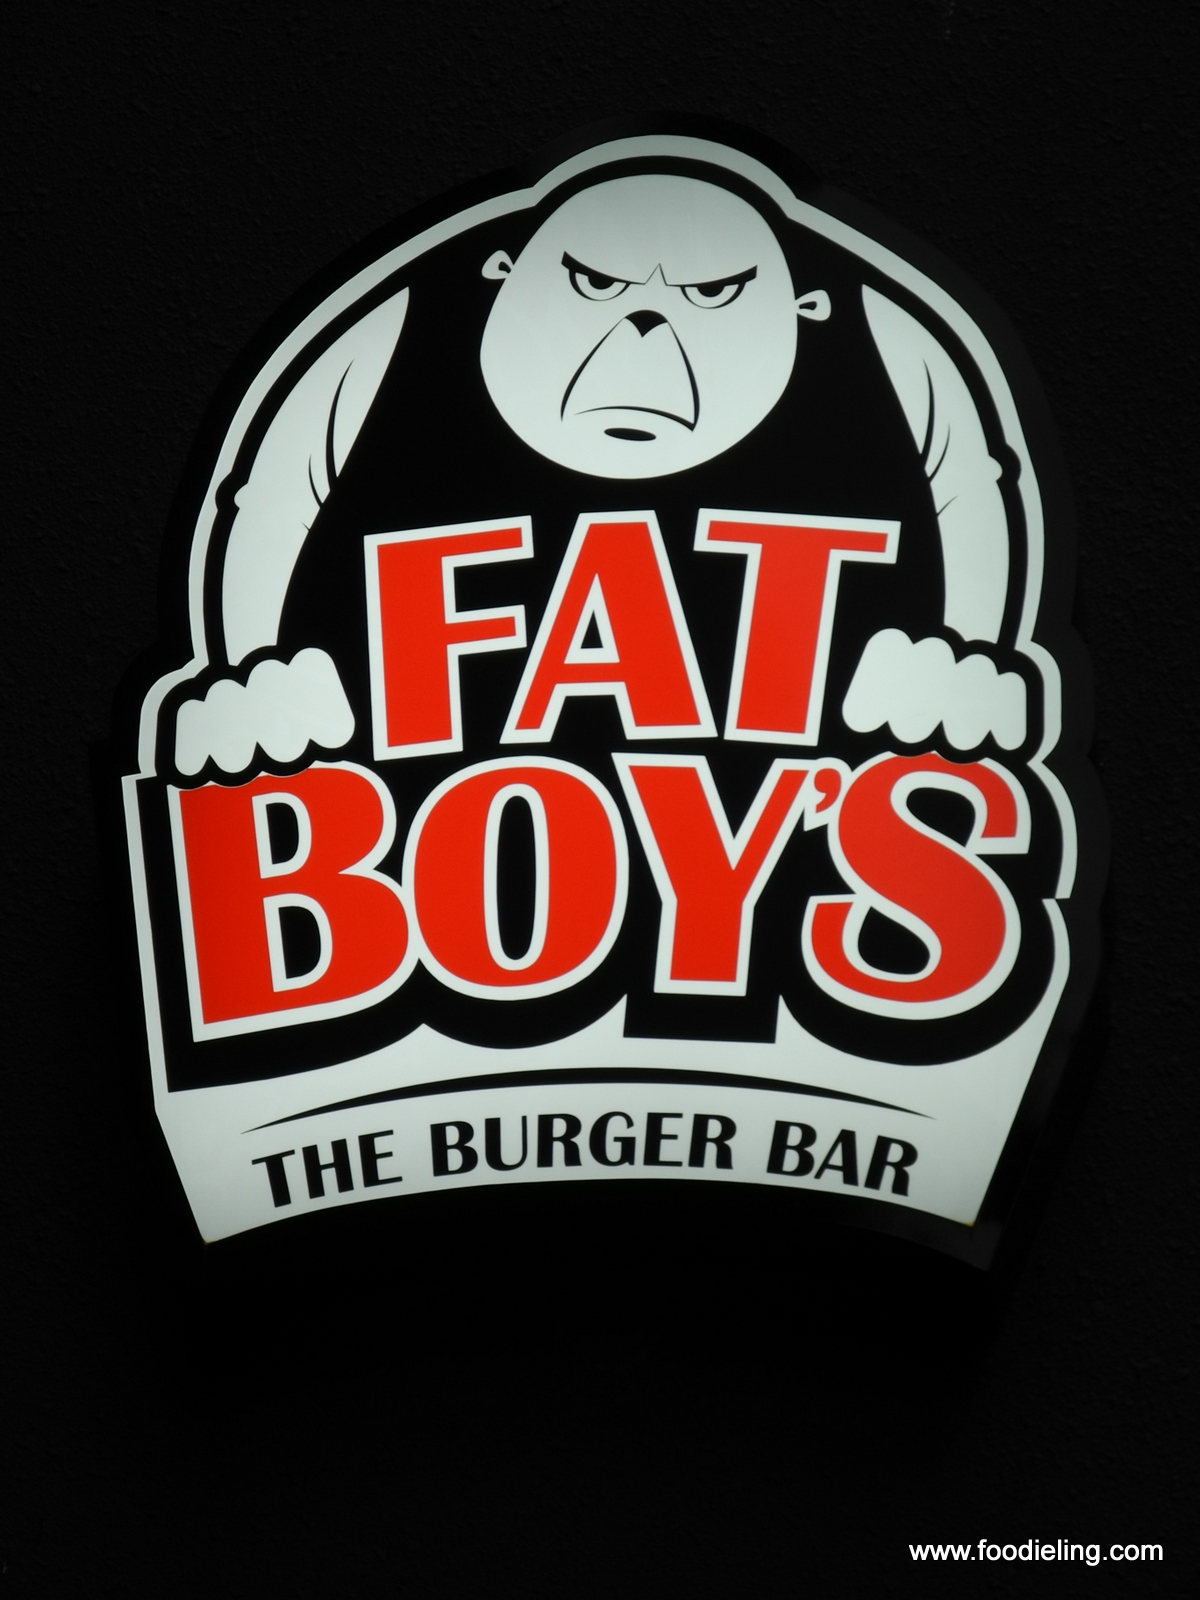 Bad Boy Mma Logo Wallpaper Fat Burger Serves Burgers